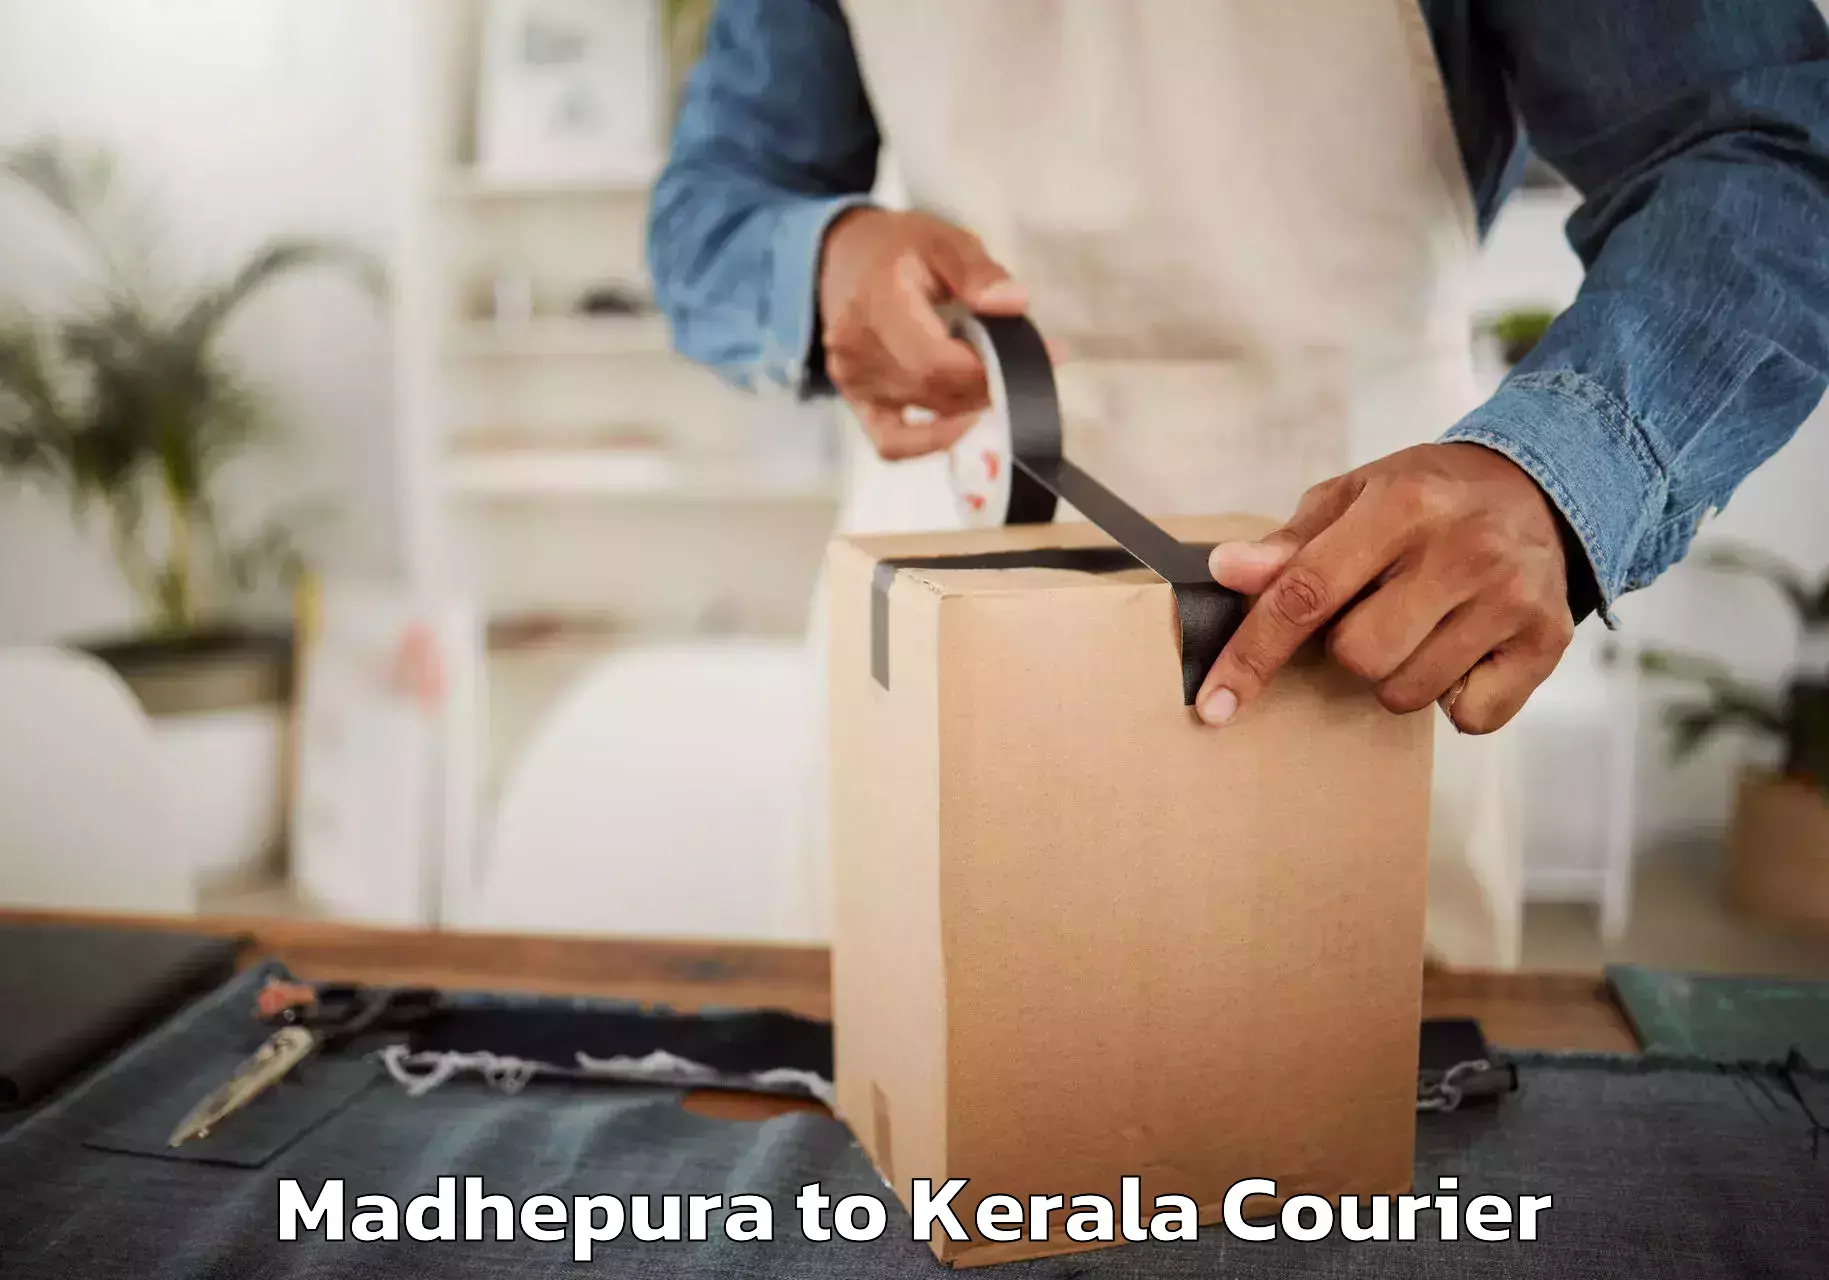 Furniture moving experts Madhepura to Taliparamba